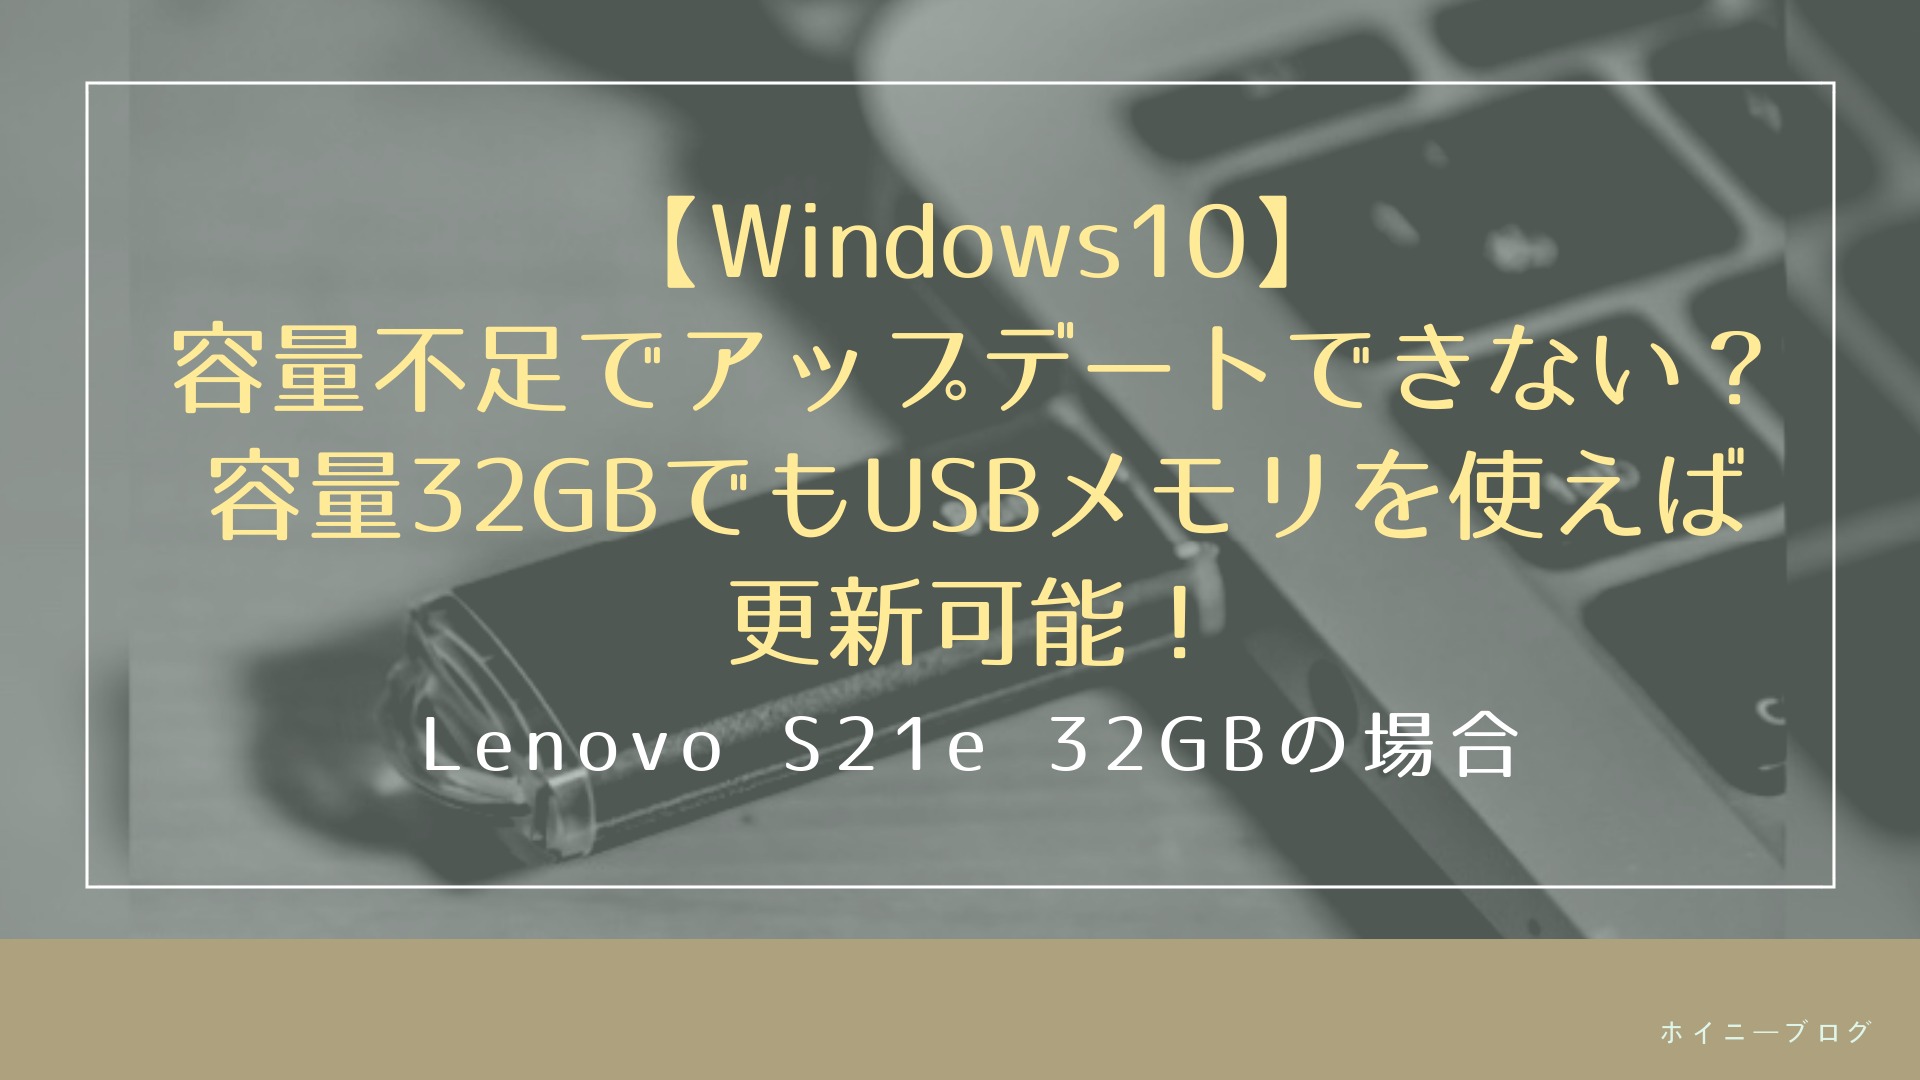 Windows10 容量不足でアップデートできない 容量32gbでもusbメモリを使えば更新可能 ホイニーブログ